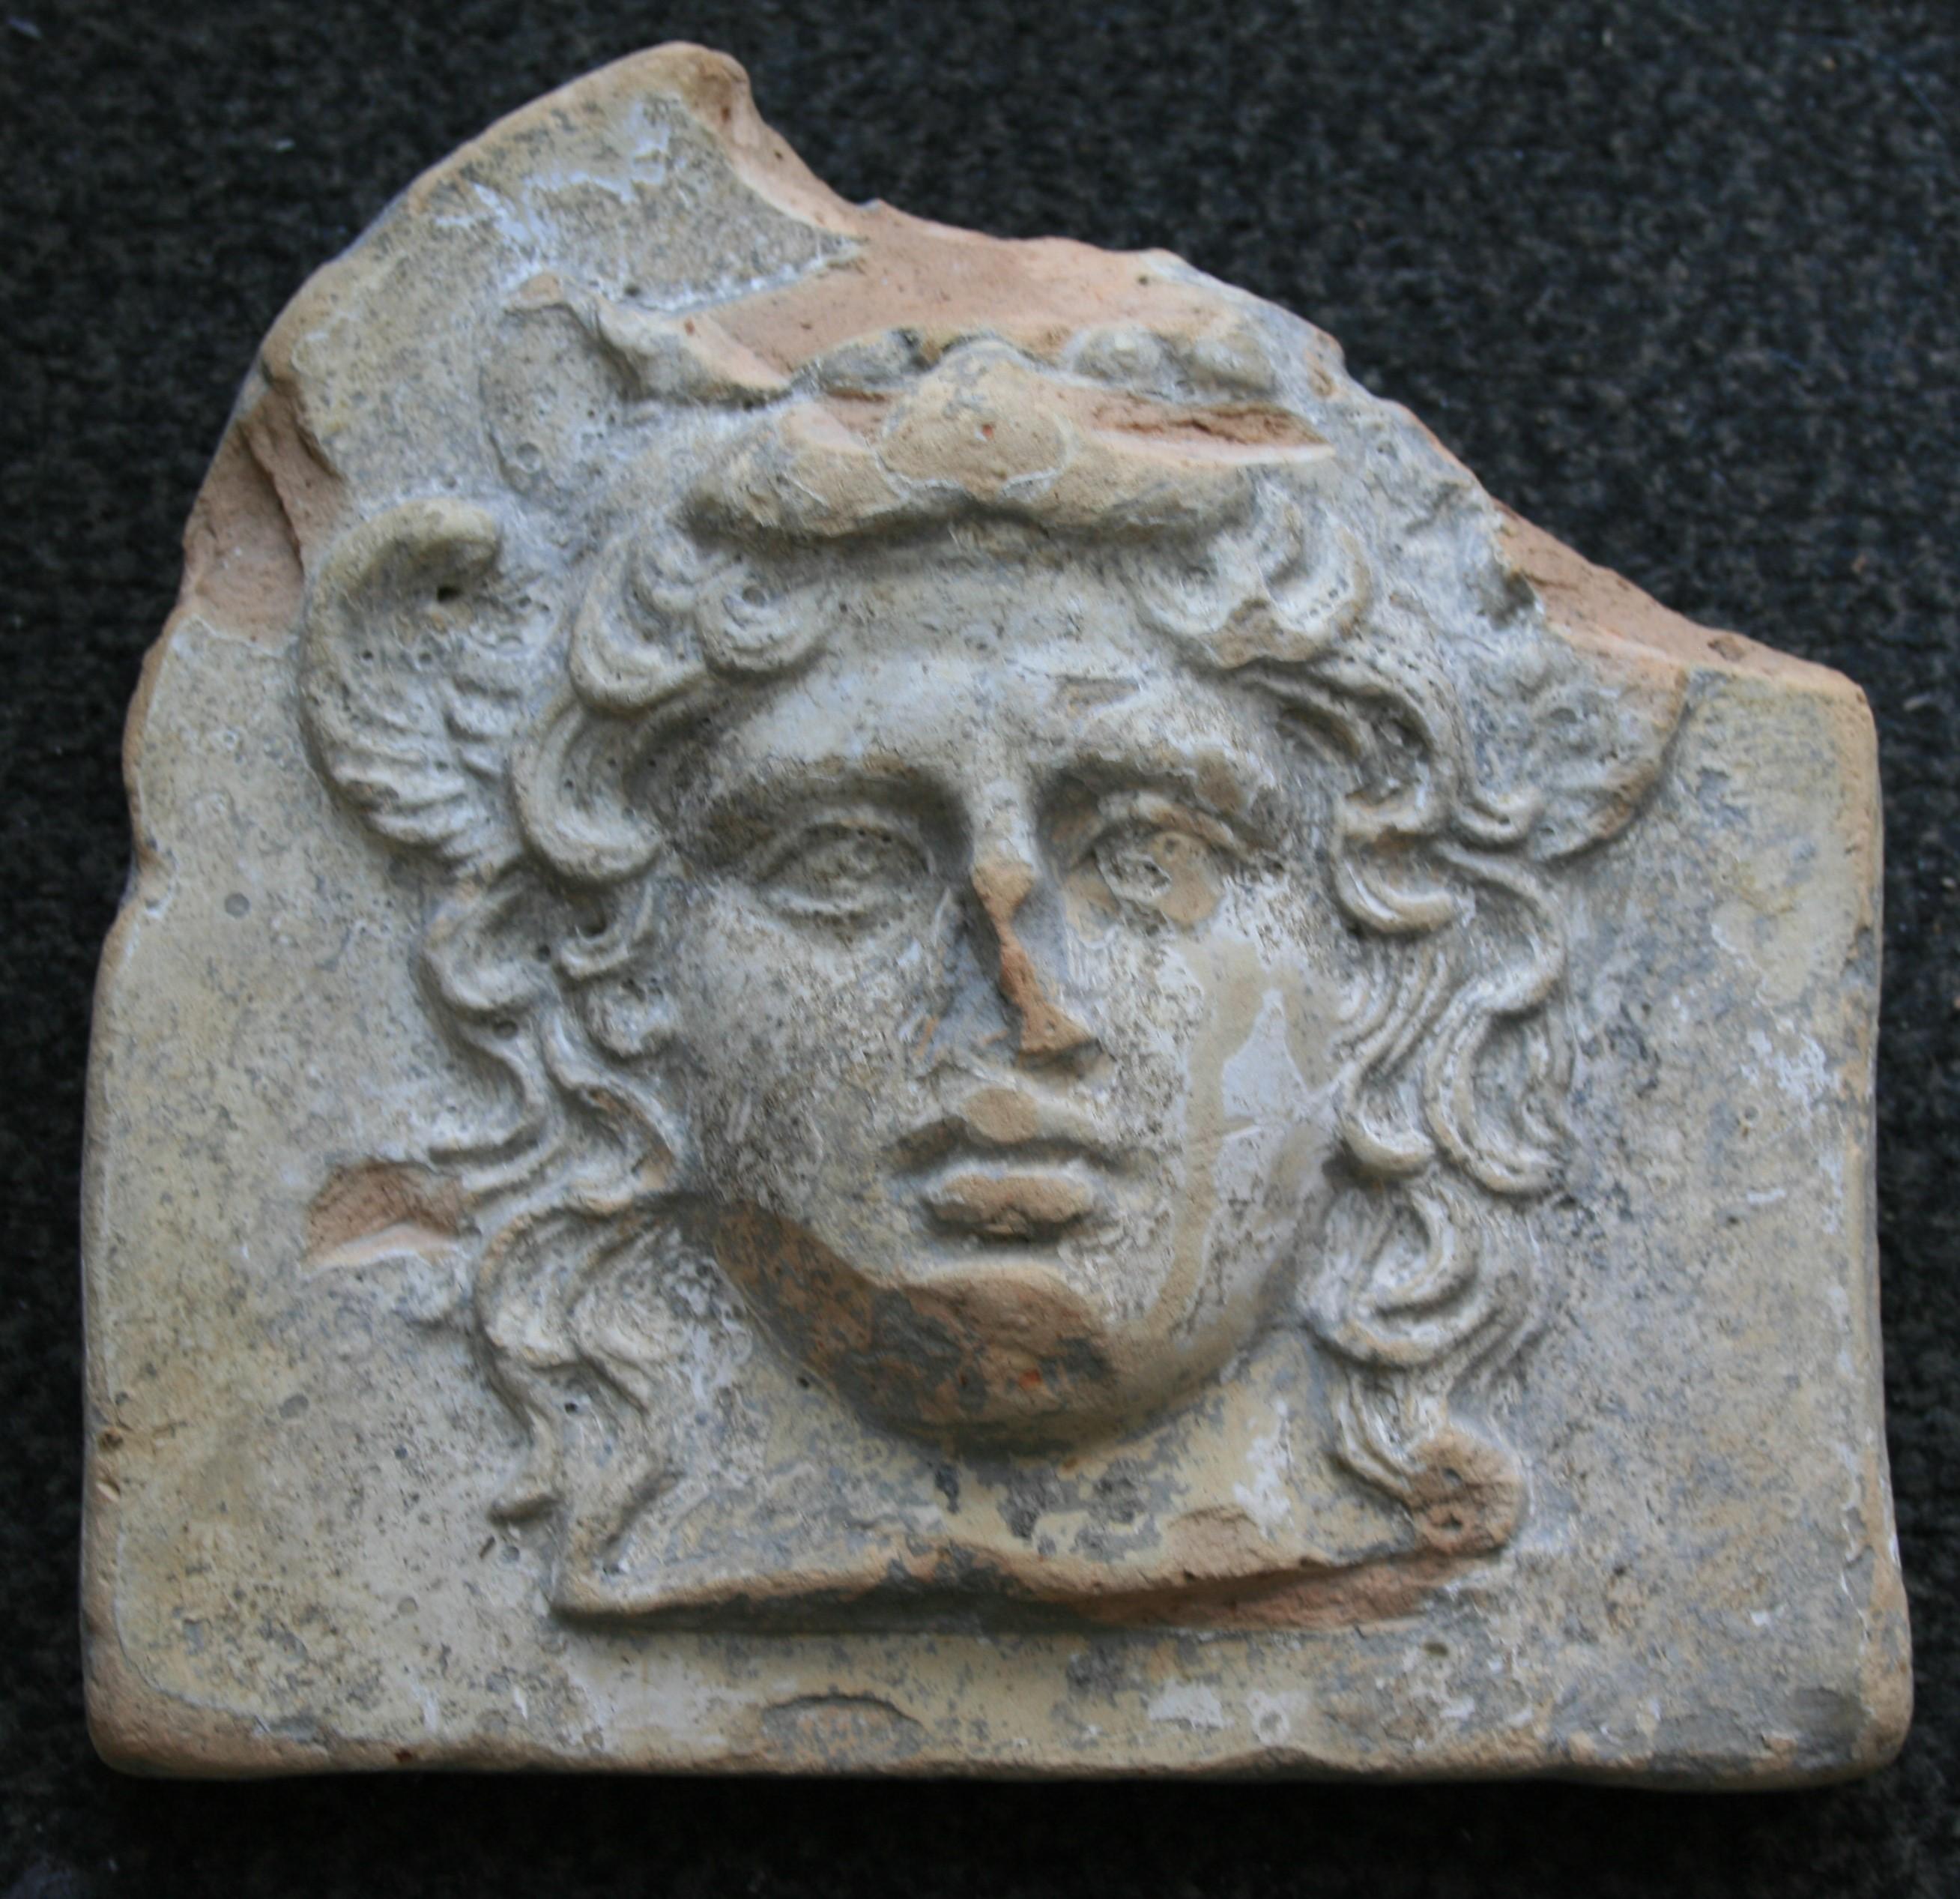 Altgriechisches Terrakotta-Antefix, verziert mit dem weiblichen Kopf der Göttin Artemis Bendis.
Westgriechisch, Italien, Tarent, frühes 4. Jahrhundert v. Chr.
Zwei kleine gefiederte Flügel, die das Gesicht der Göttin flankieren, das gewellte